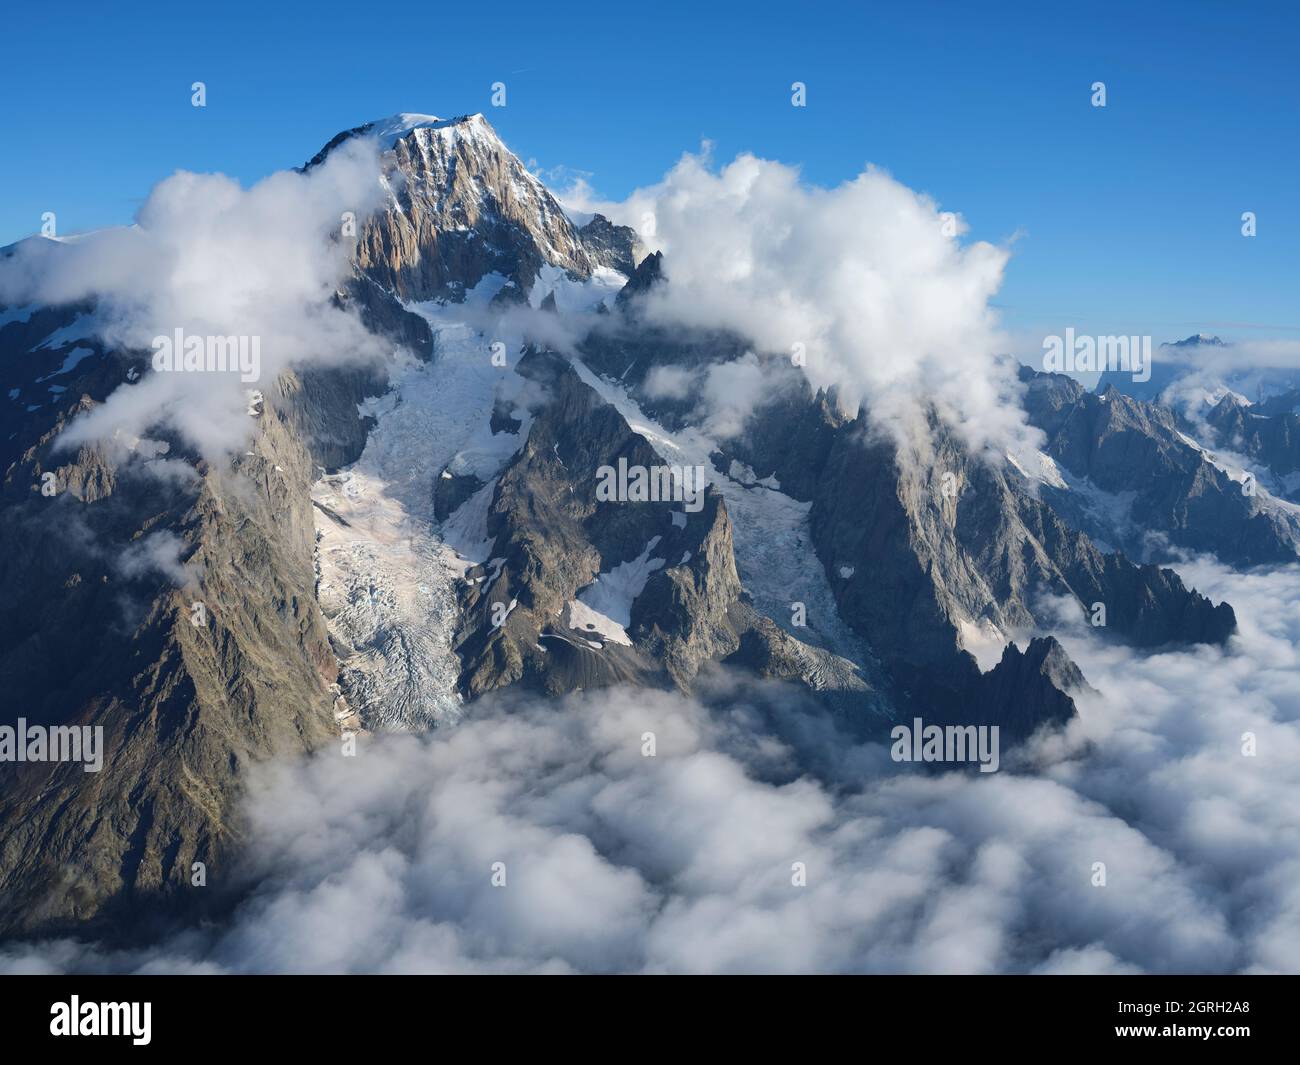 VISTA AEREA. Faccia orientale del Monte Bianco nella luce del mattino sopra alcune nuvole basse. Courmayeur, Valle d'Aosta, Italia. Foto Stock